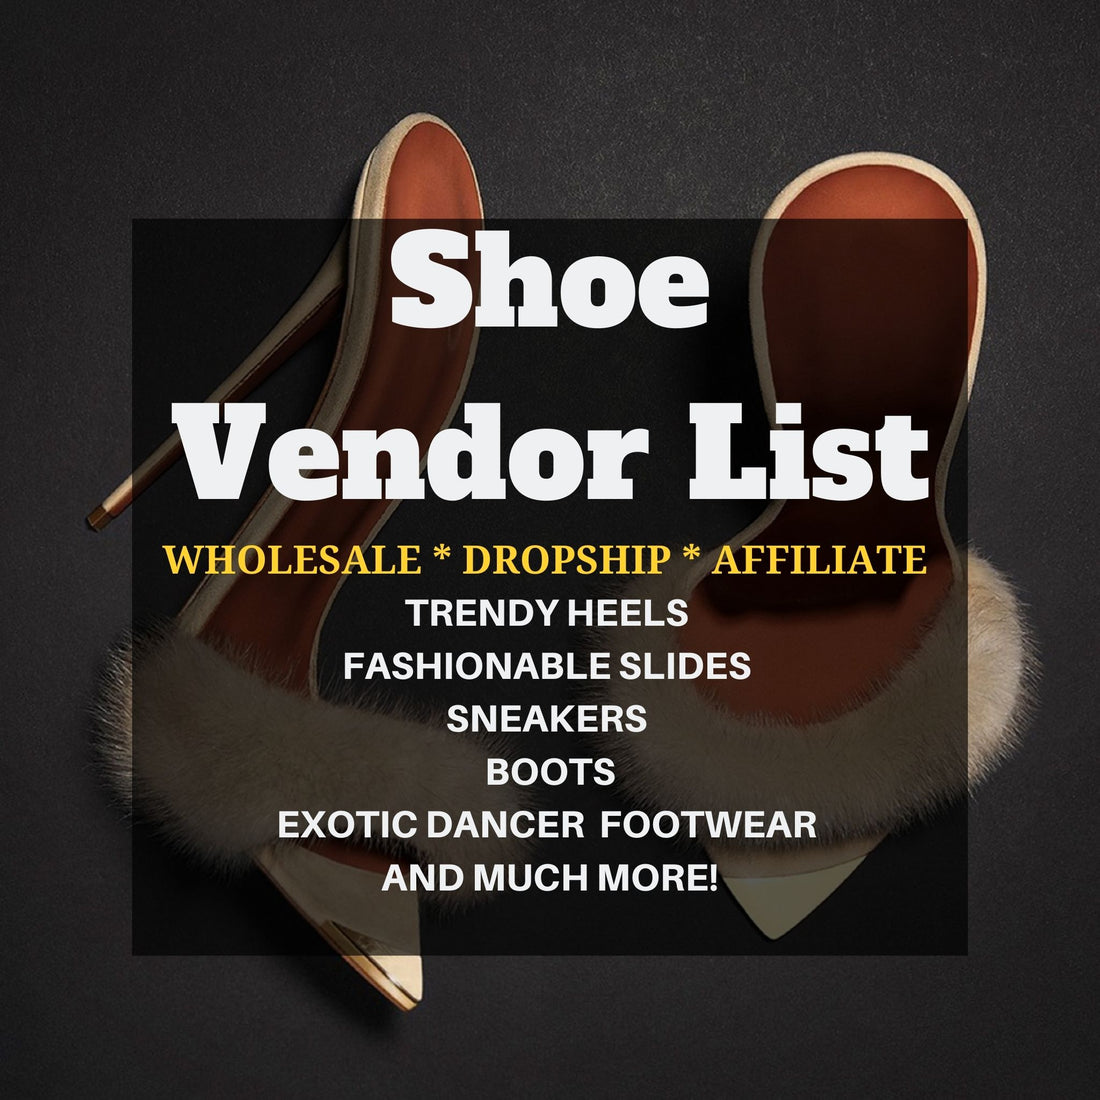 Shoe Vendor List- dropship & wholesale fashion vendors| Faddishi ...